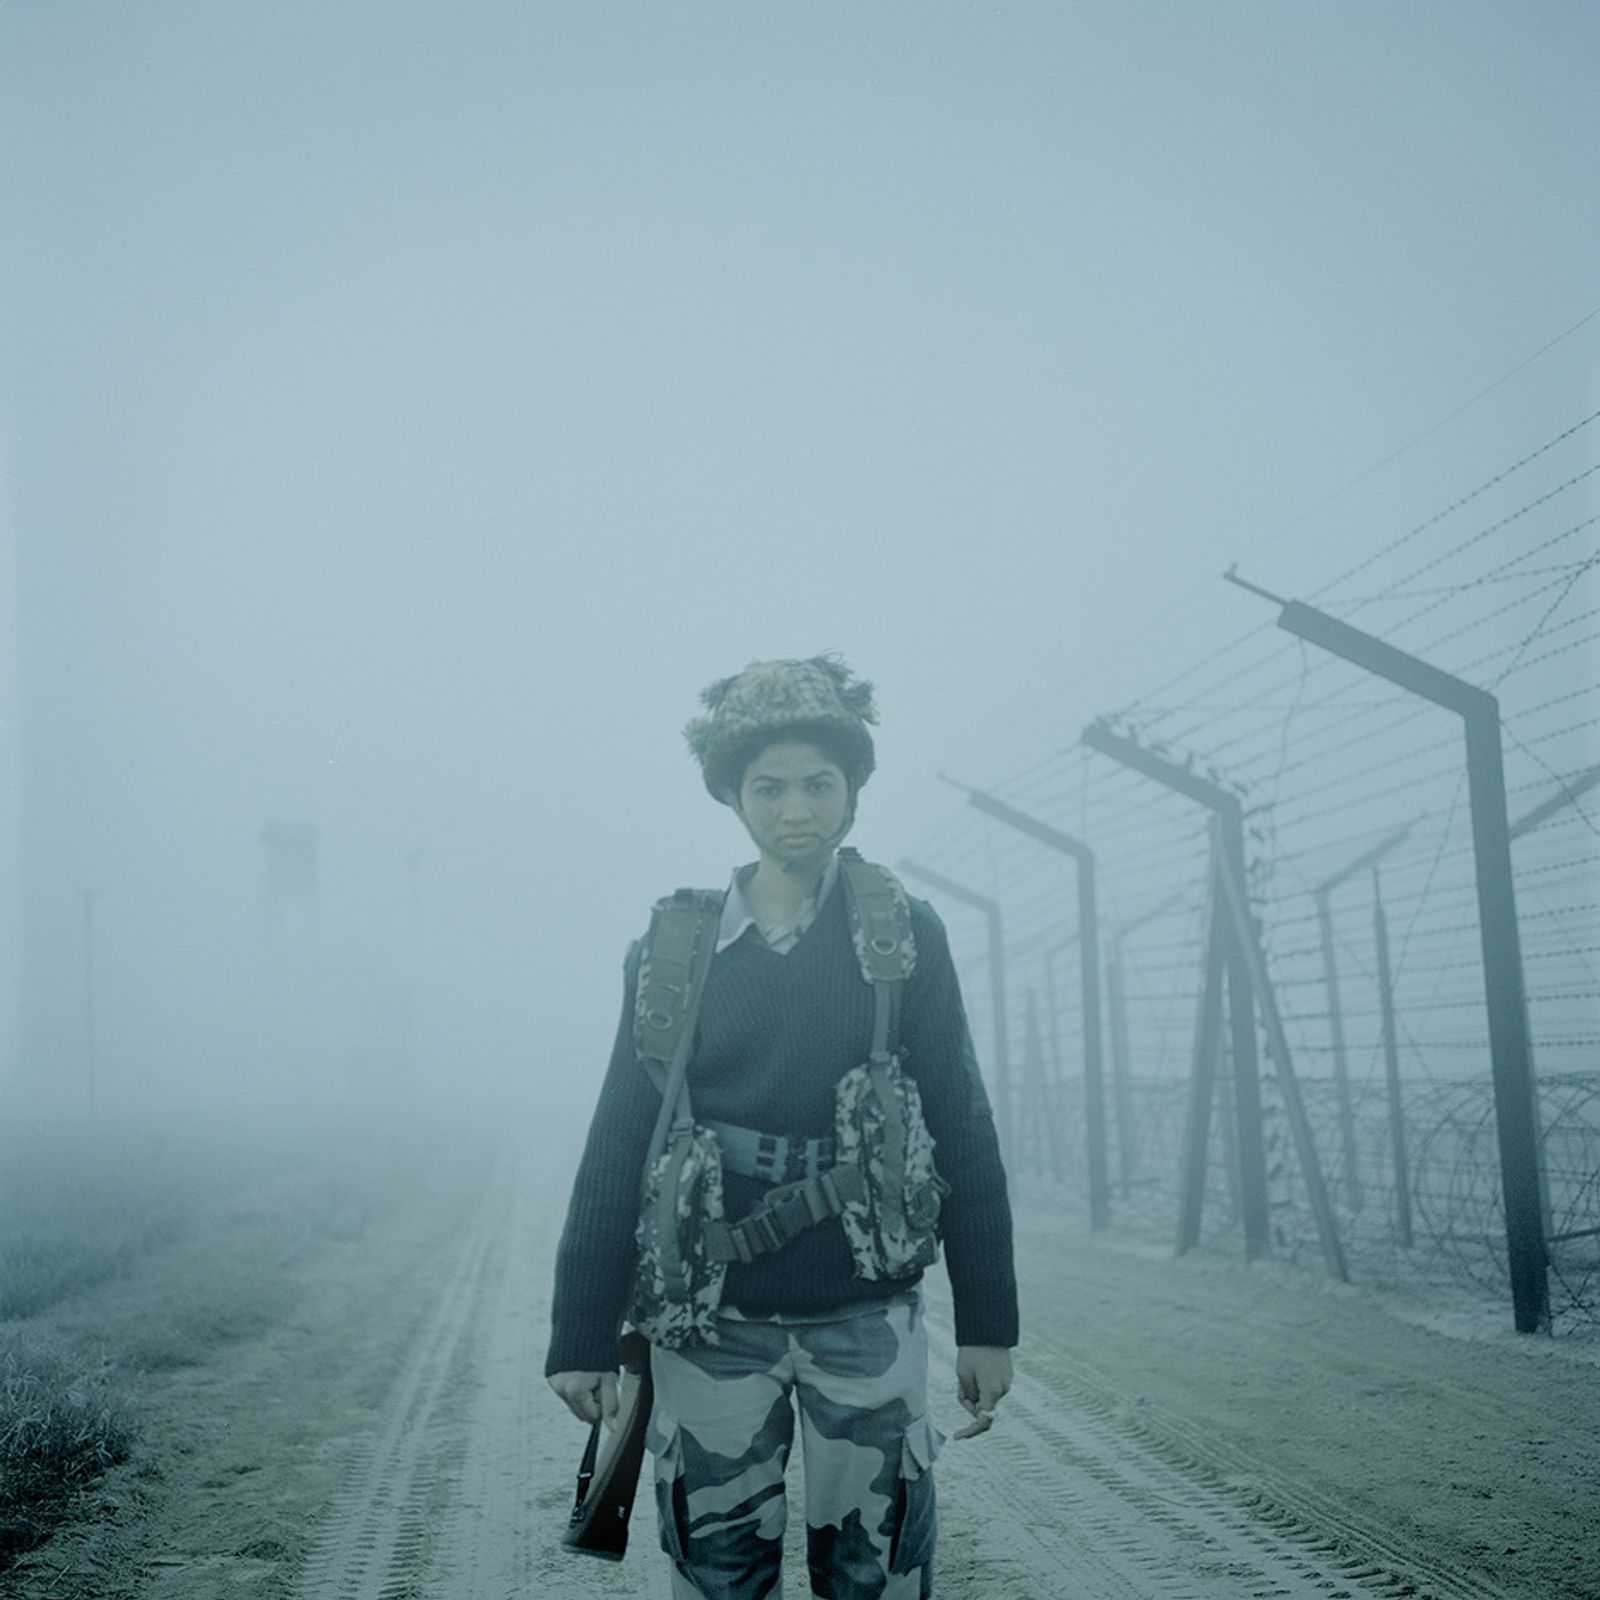 © Poulomi Basu - Shabbo Kumari at the border Indo-Pakistan of Attari, Punjab. October 2011.